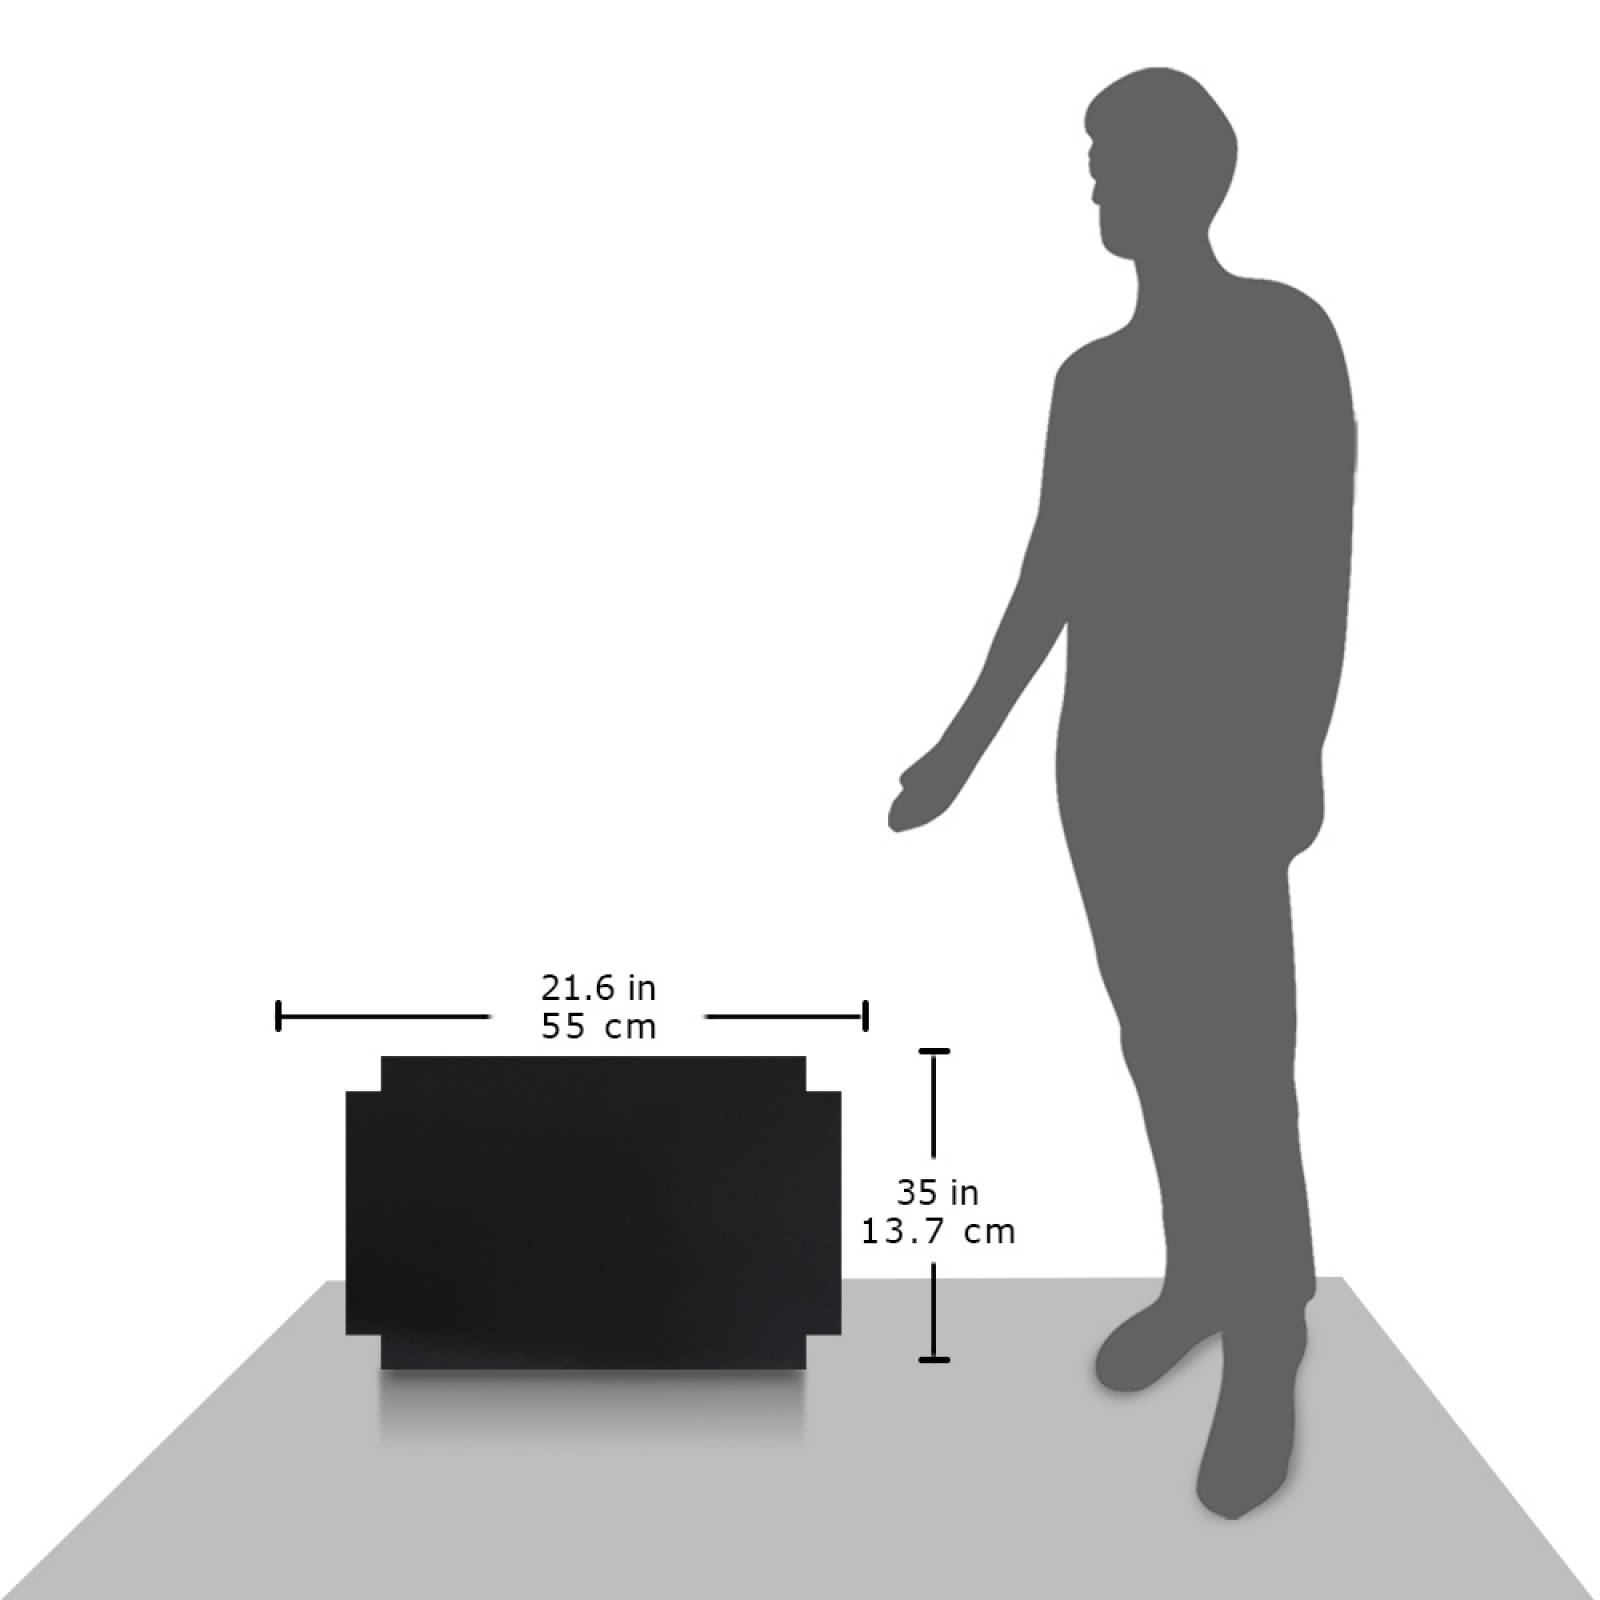 Aislante Cerámico Protector Térmico para Pared de 55 x 35 cm Negro, Paquete 3 Piezas, Mod: 5PTPP3Ne